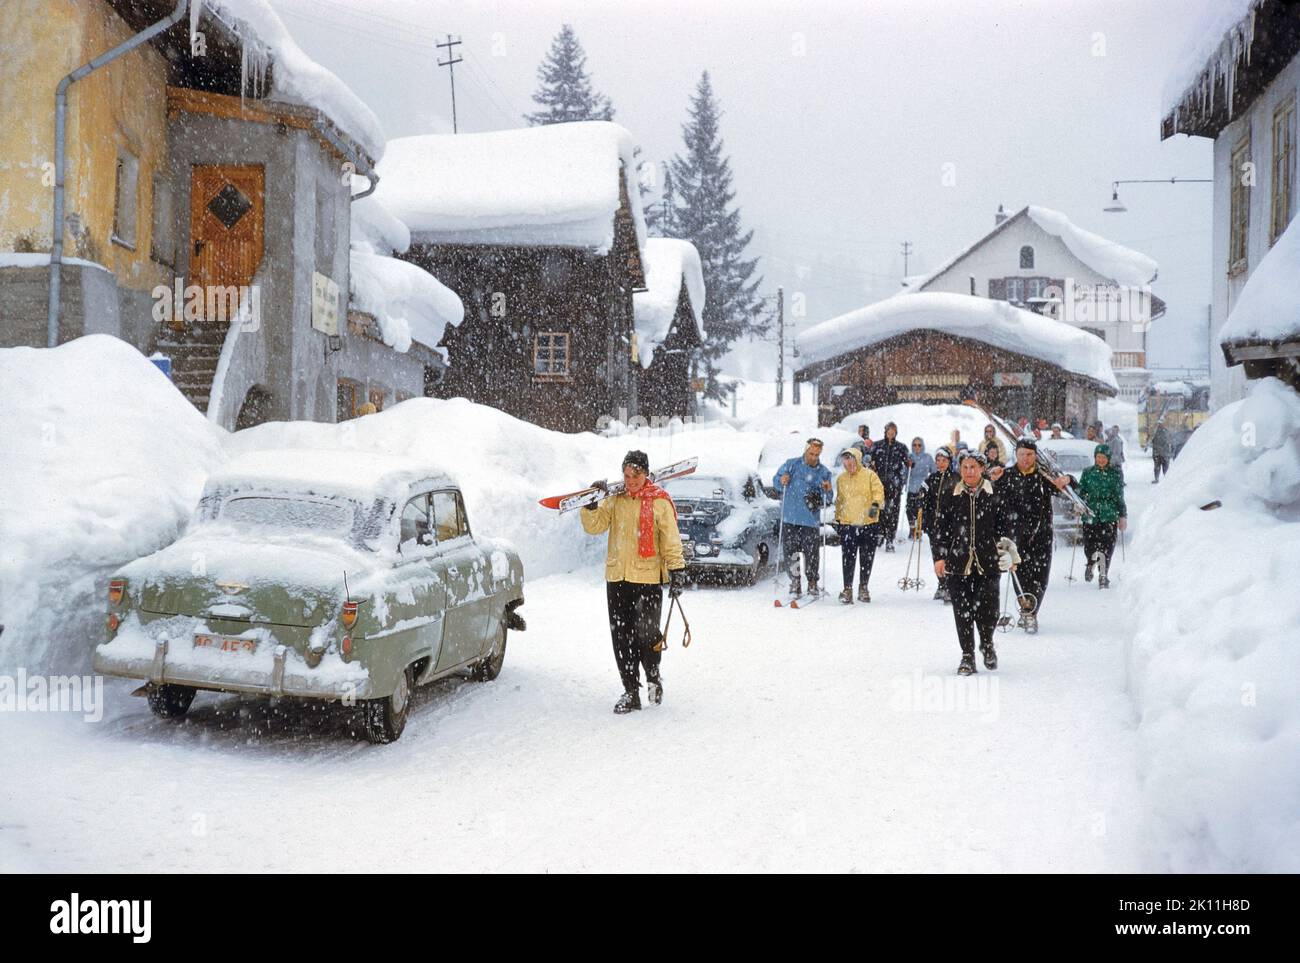 Gruppo di sciatori che camminano attraverso il villaggio in Snowy Day, St. Anton am Arlberg, Austria, toni Frissell Collection, gennaio 1955 Foto Stock